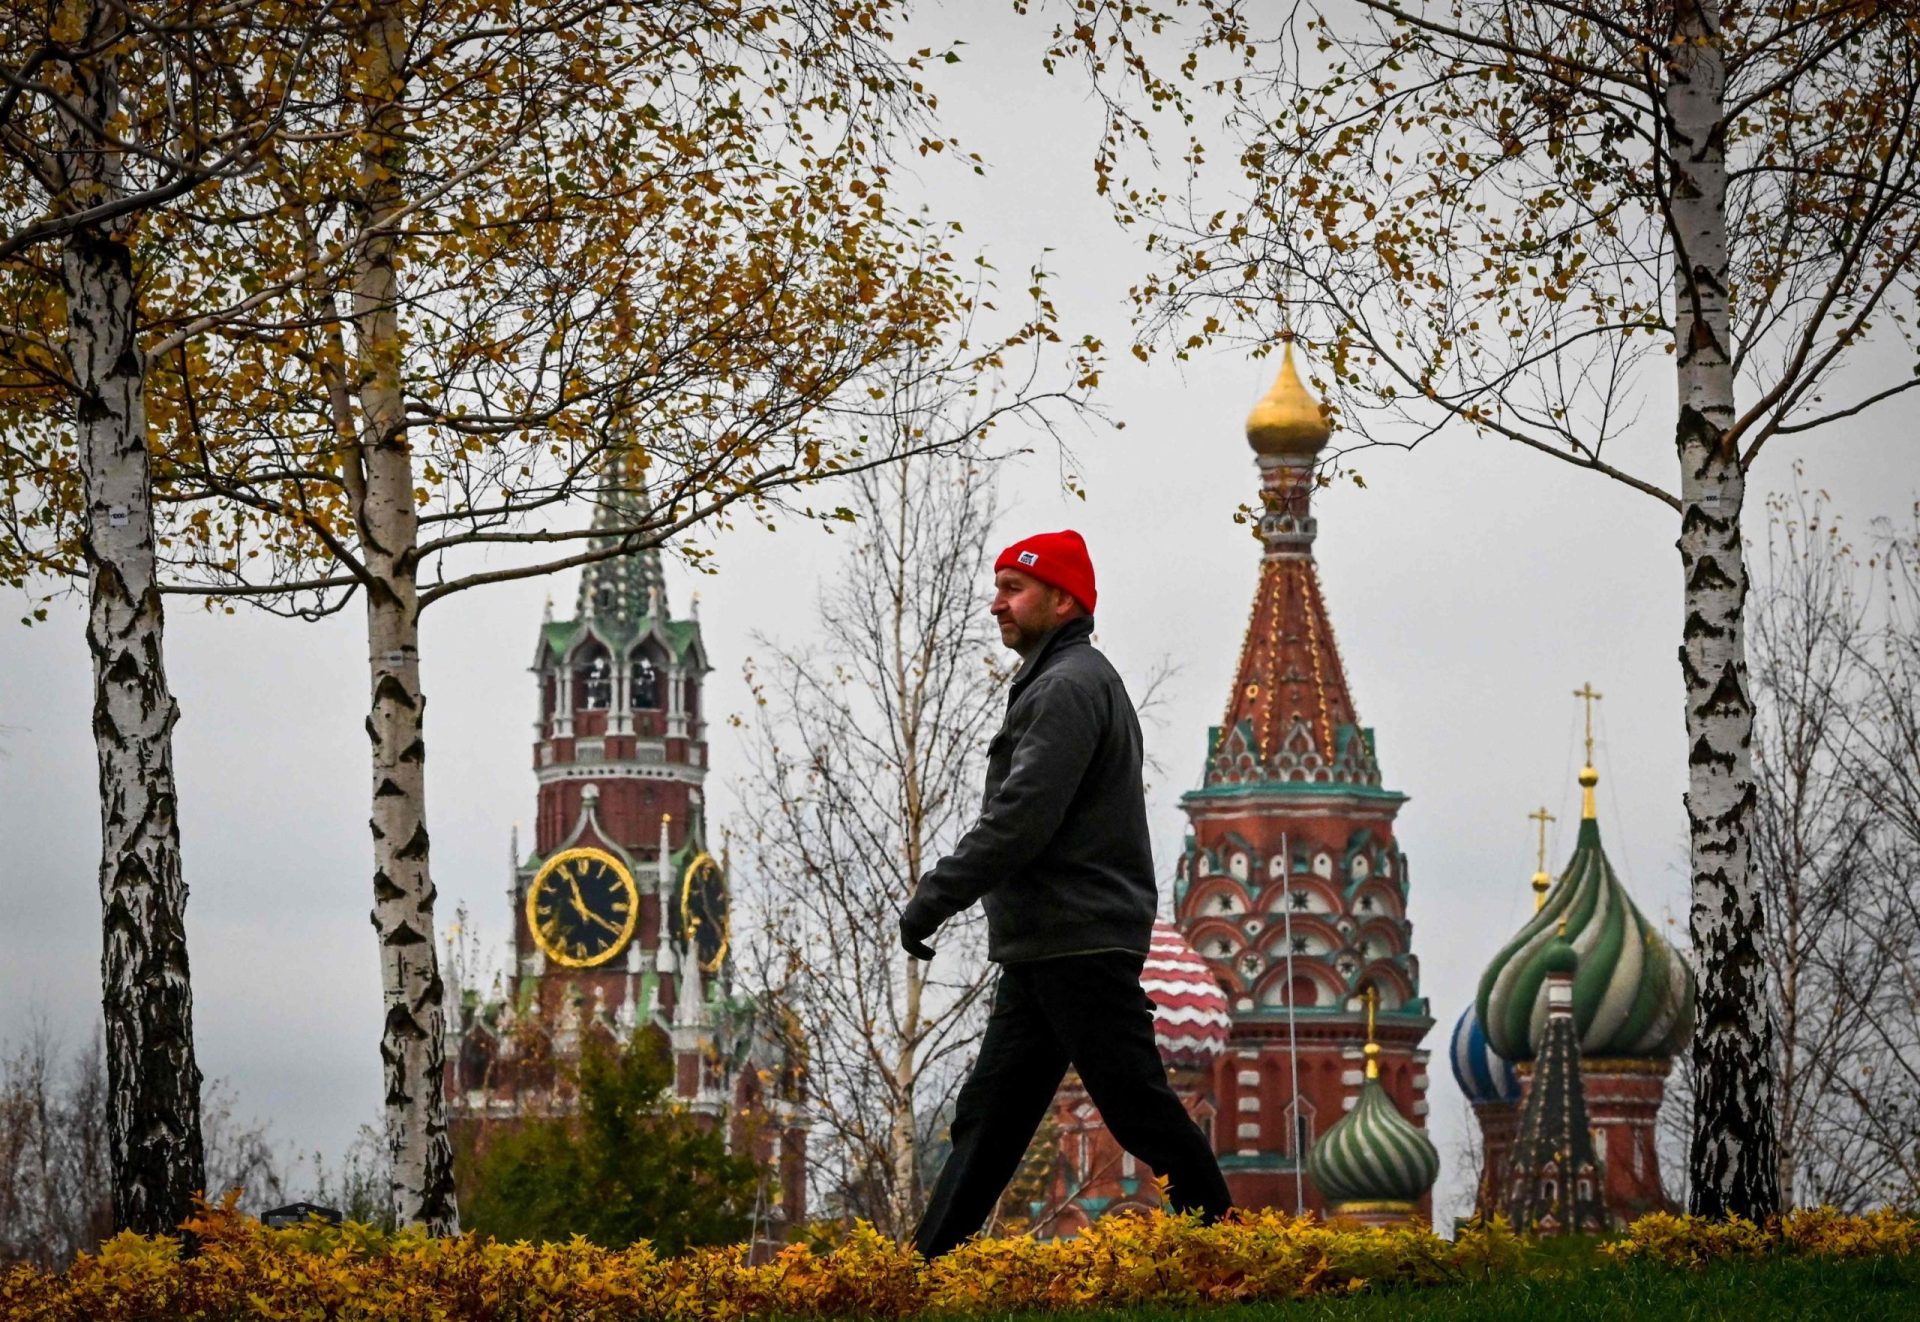 Polícia russa investiga fotos obscenas junto de monumentos